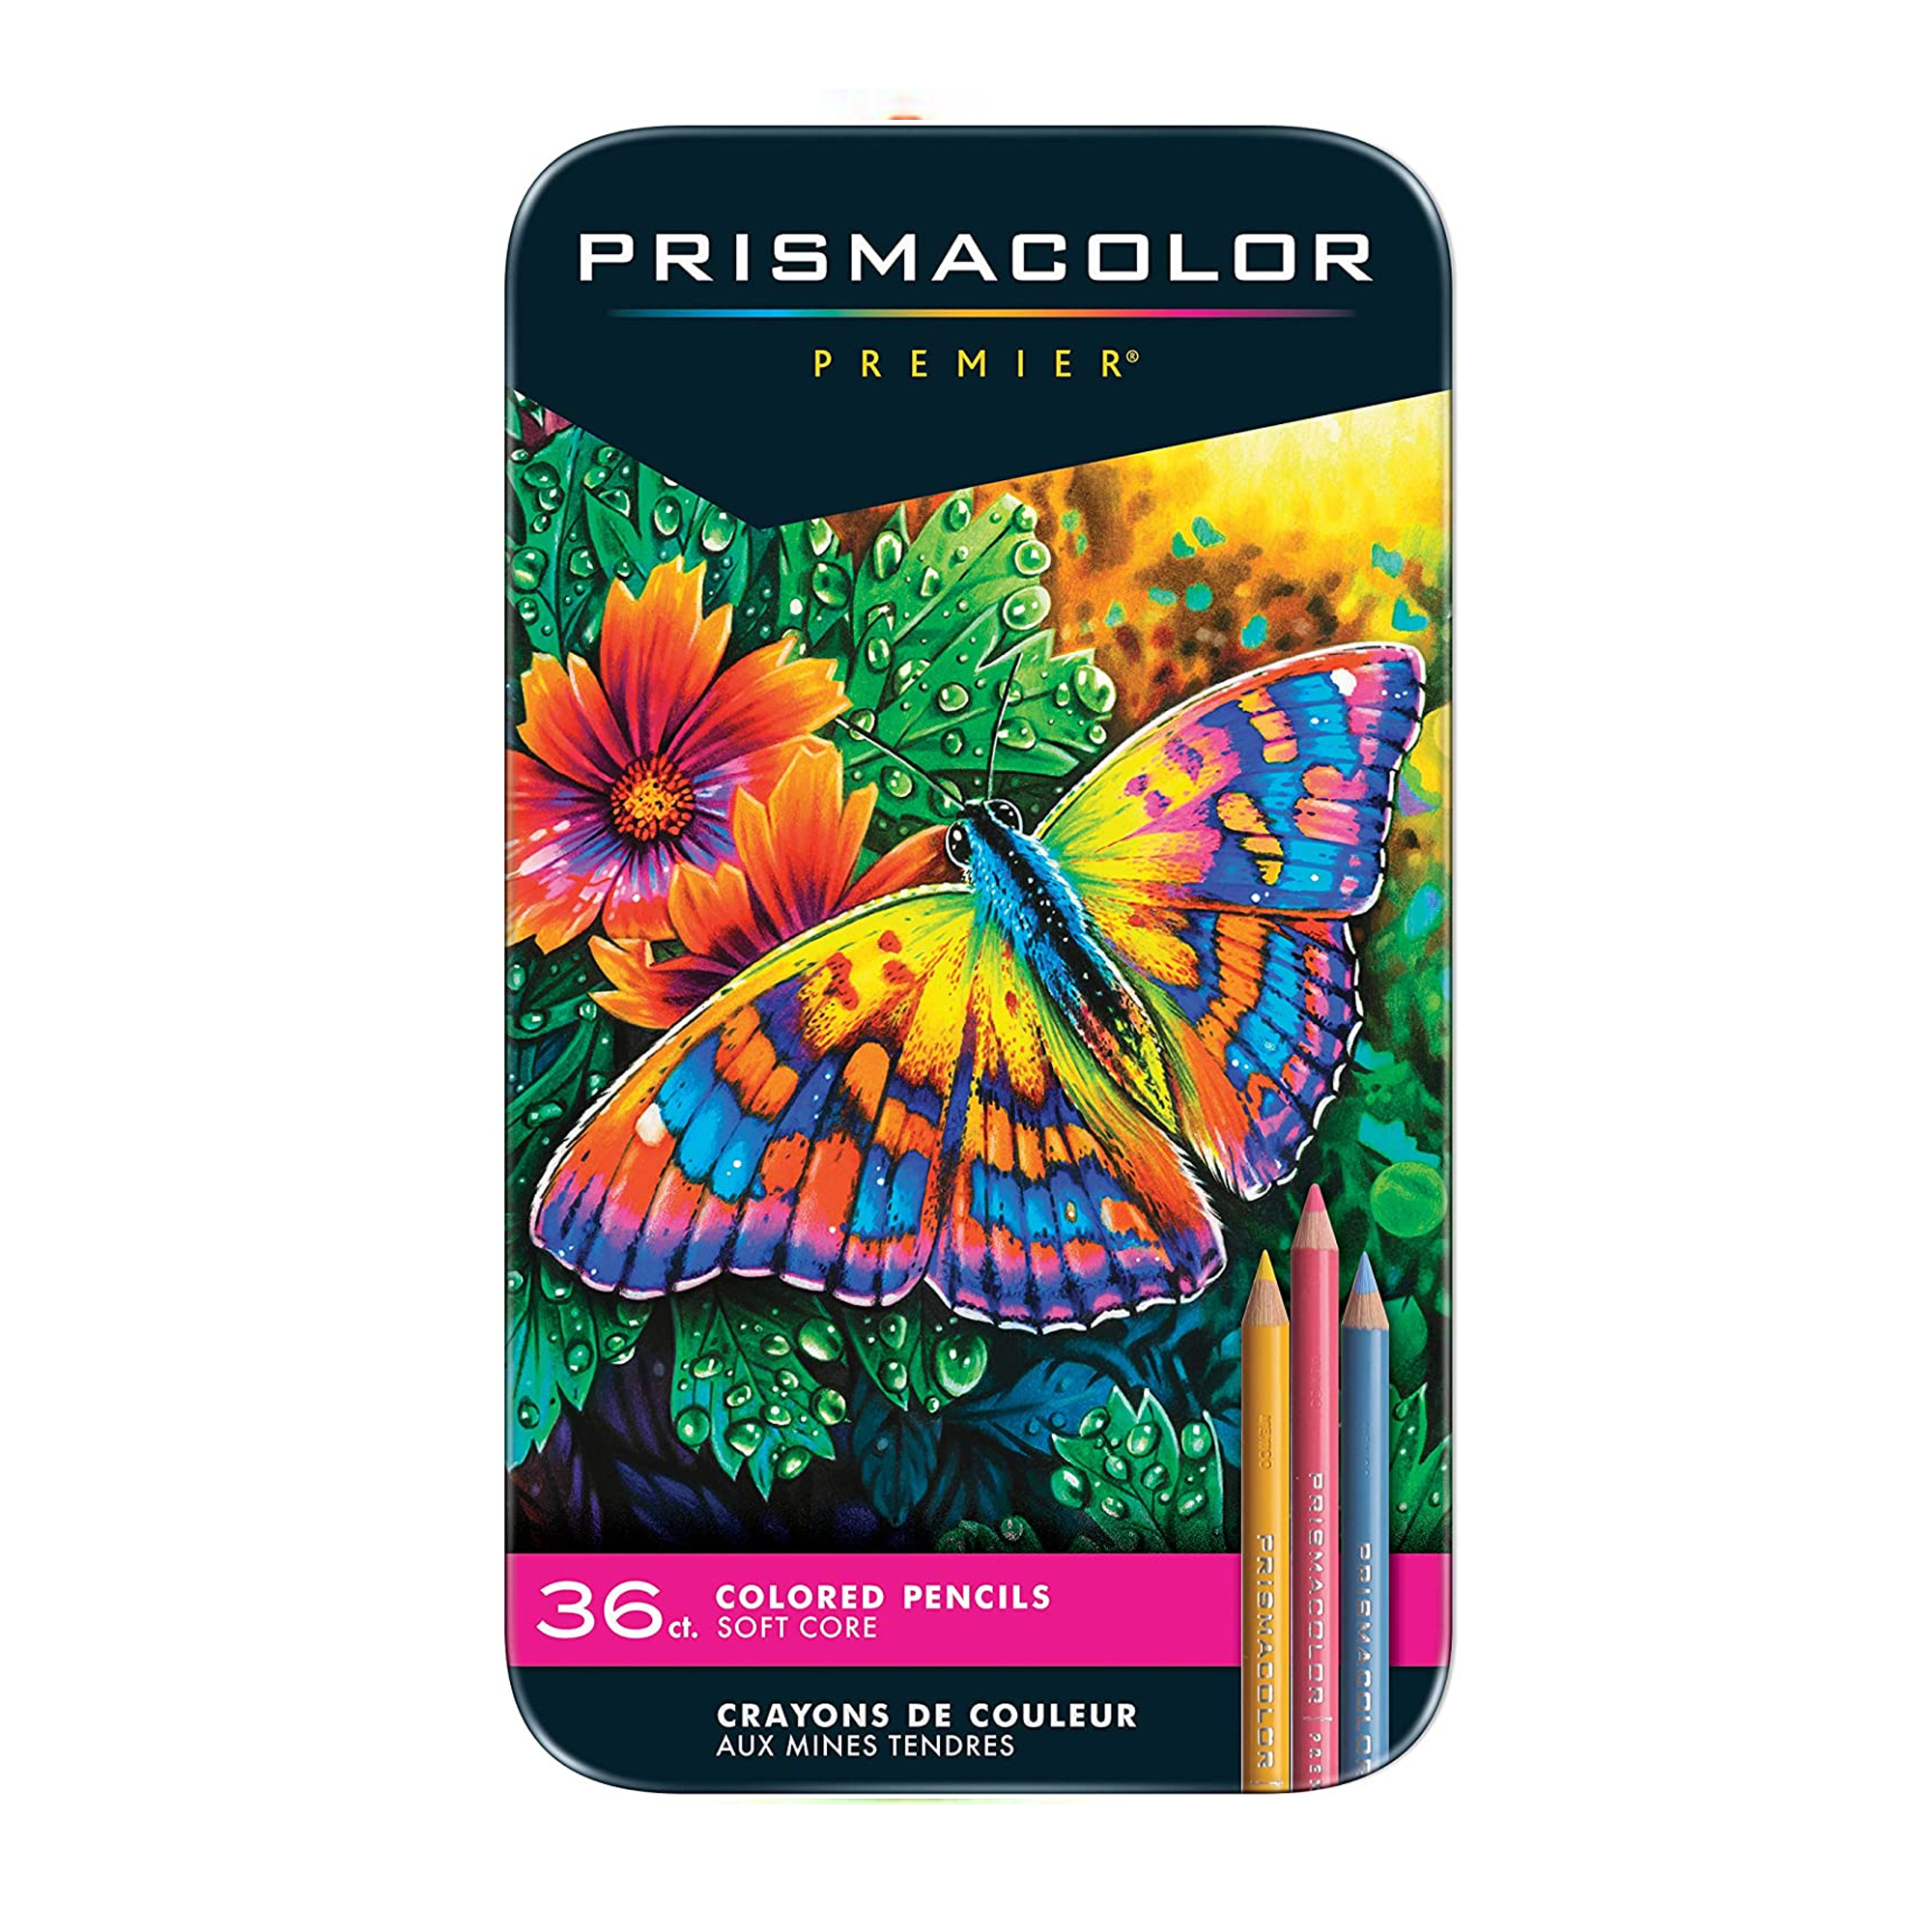 Colores Prismacolor premier con 36 pieza Lápiz de  color prismacolor profesional (premier) estuche c/36 colores diferentes, máxima suavidad al escribir, la cera que contiene el producto lo hace sumamente suave, ideal para los dibujantes, artistas, diseñadores, etc                                 s                                        - PRISMACOLOR